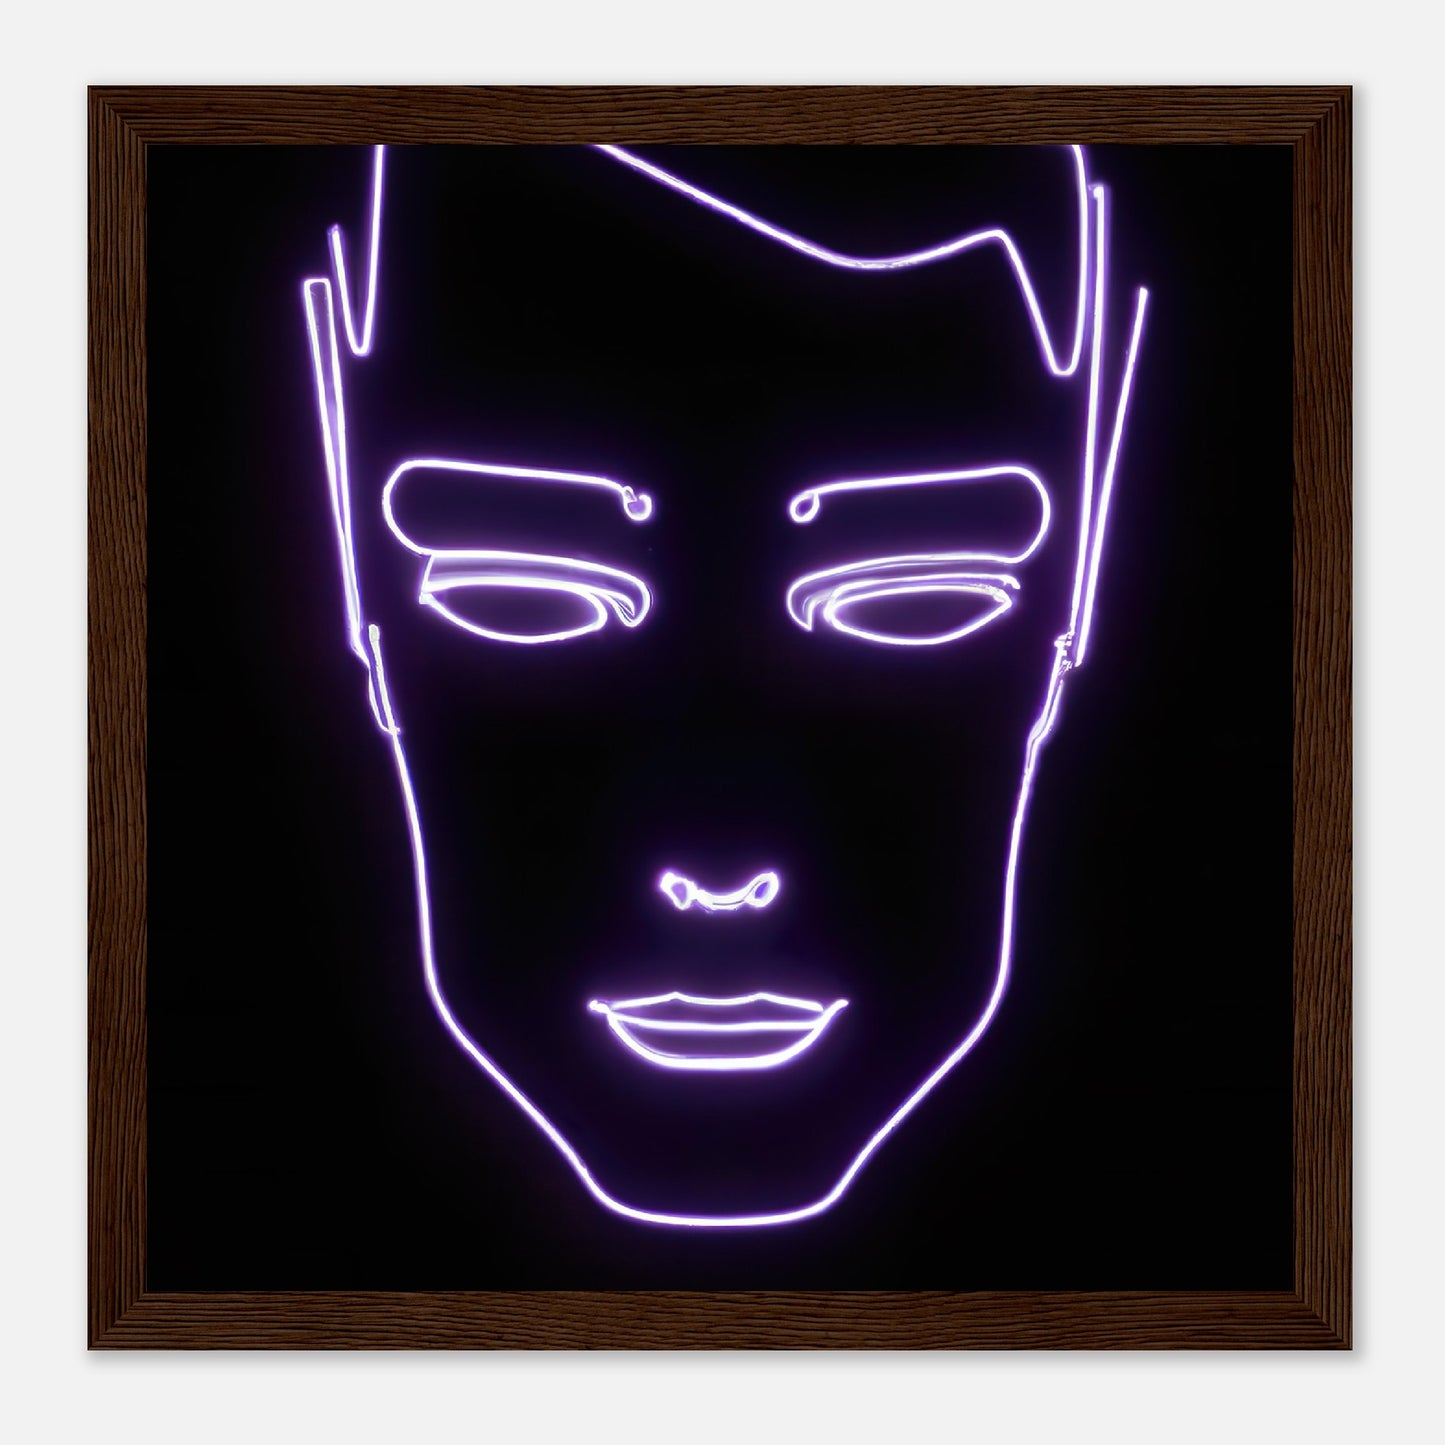 Gerahmtes Premium-Poster - Männliches Gesicht - Neon Stil, KI-Kunst - RolConArt, Neon, 30x30-cm-12x12-Dunkles-Holz